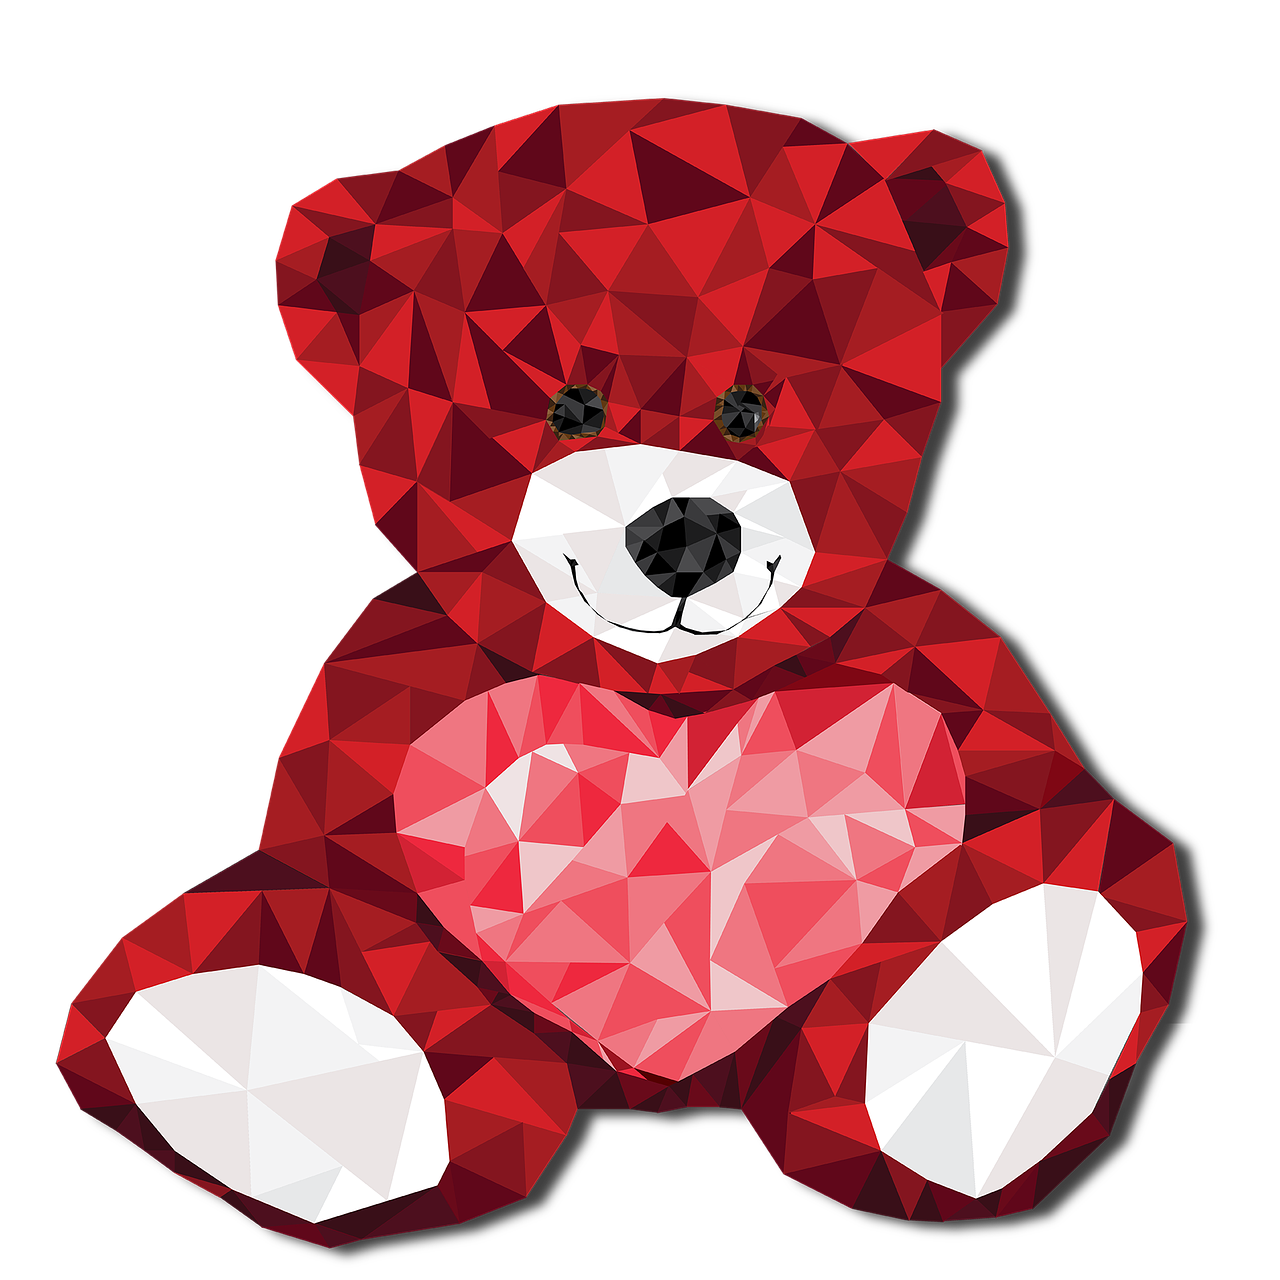 all teddy bears